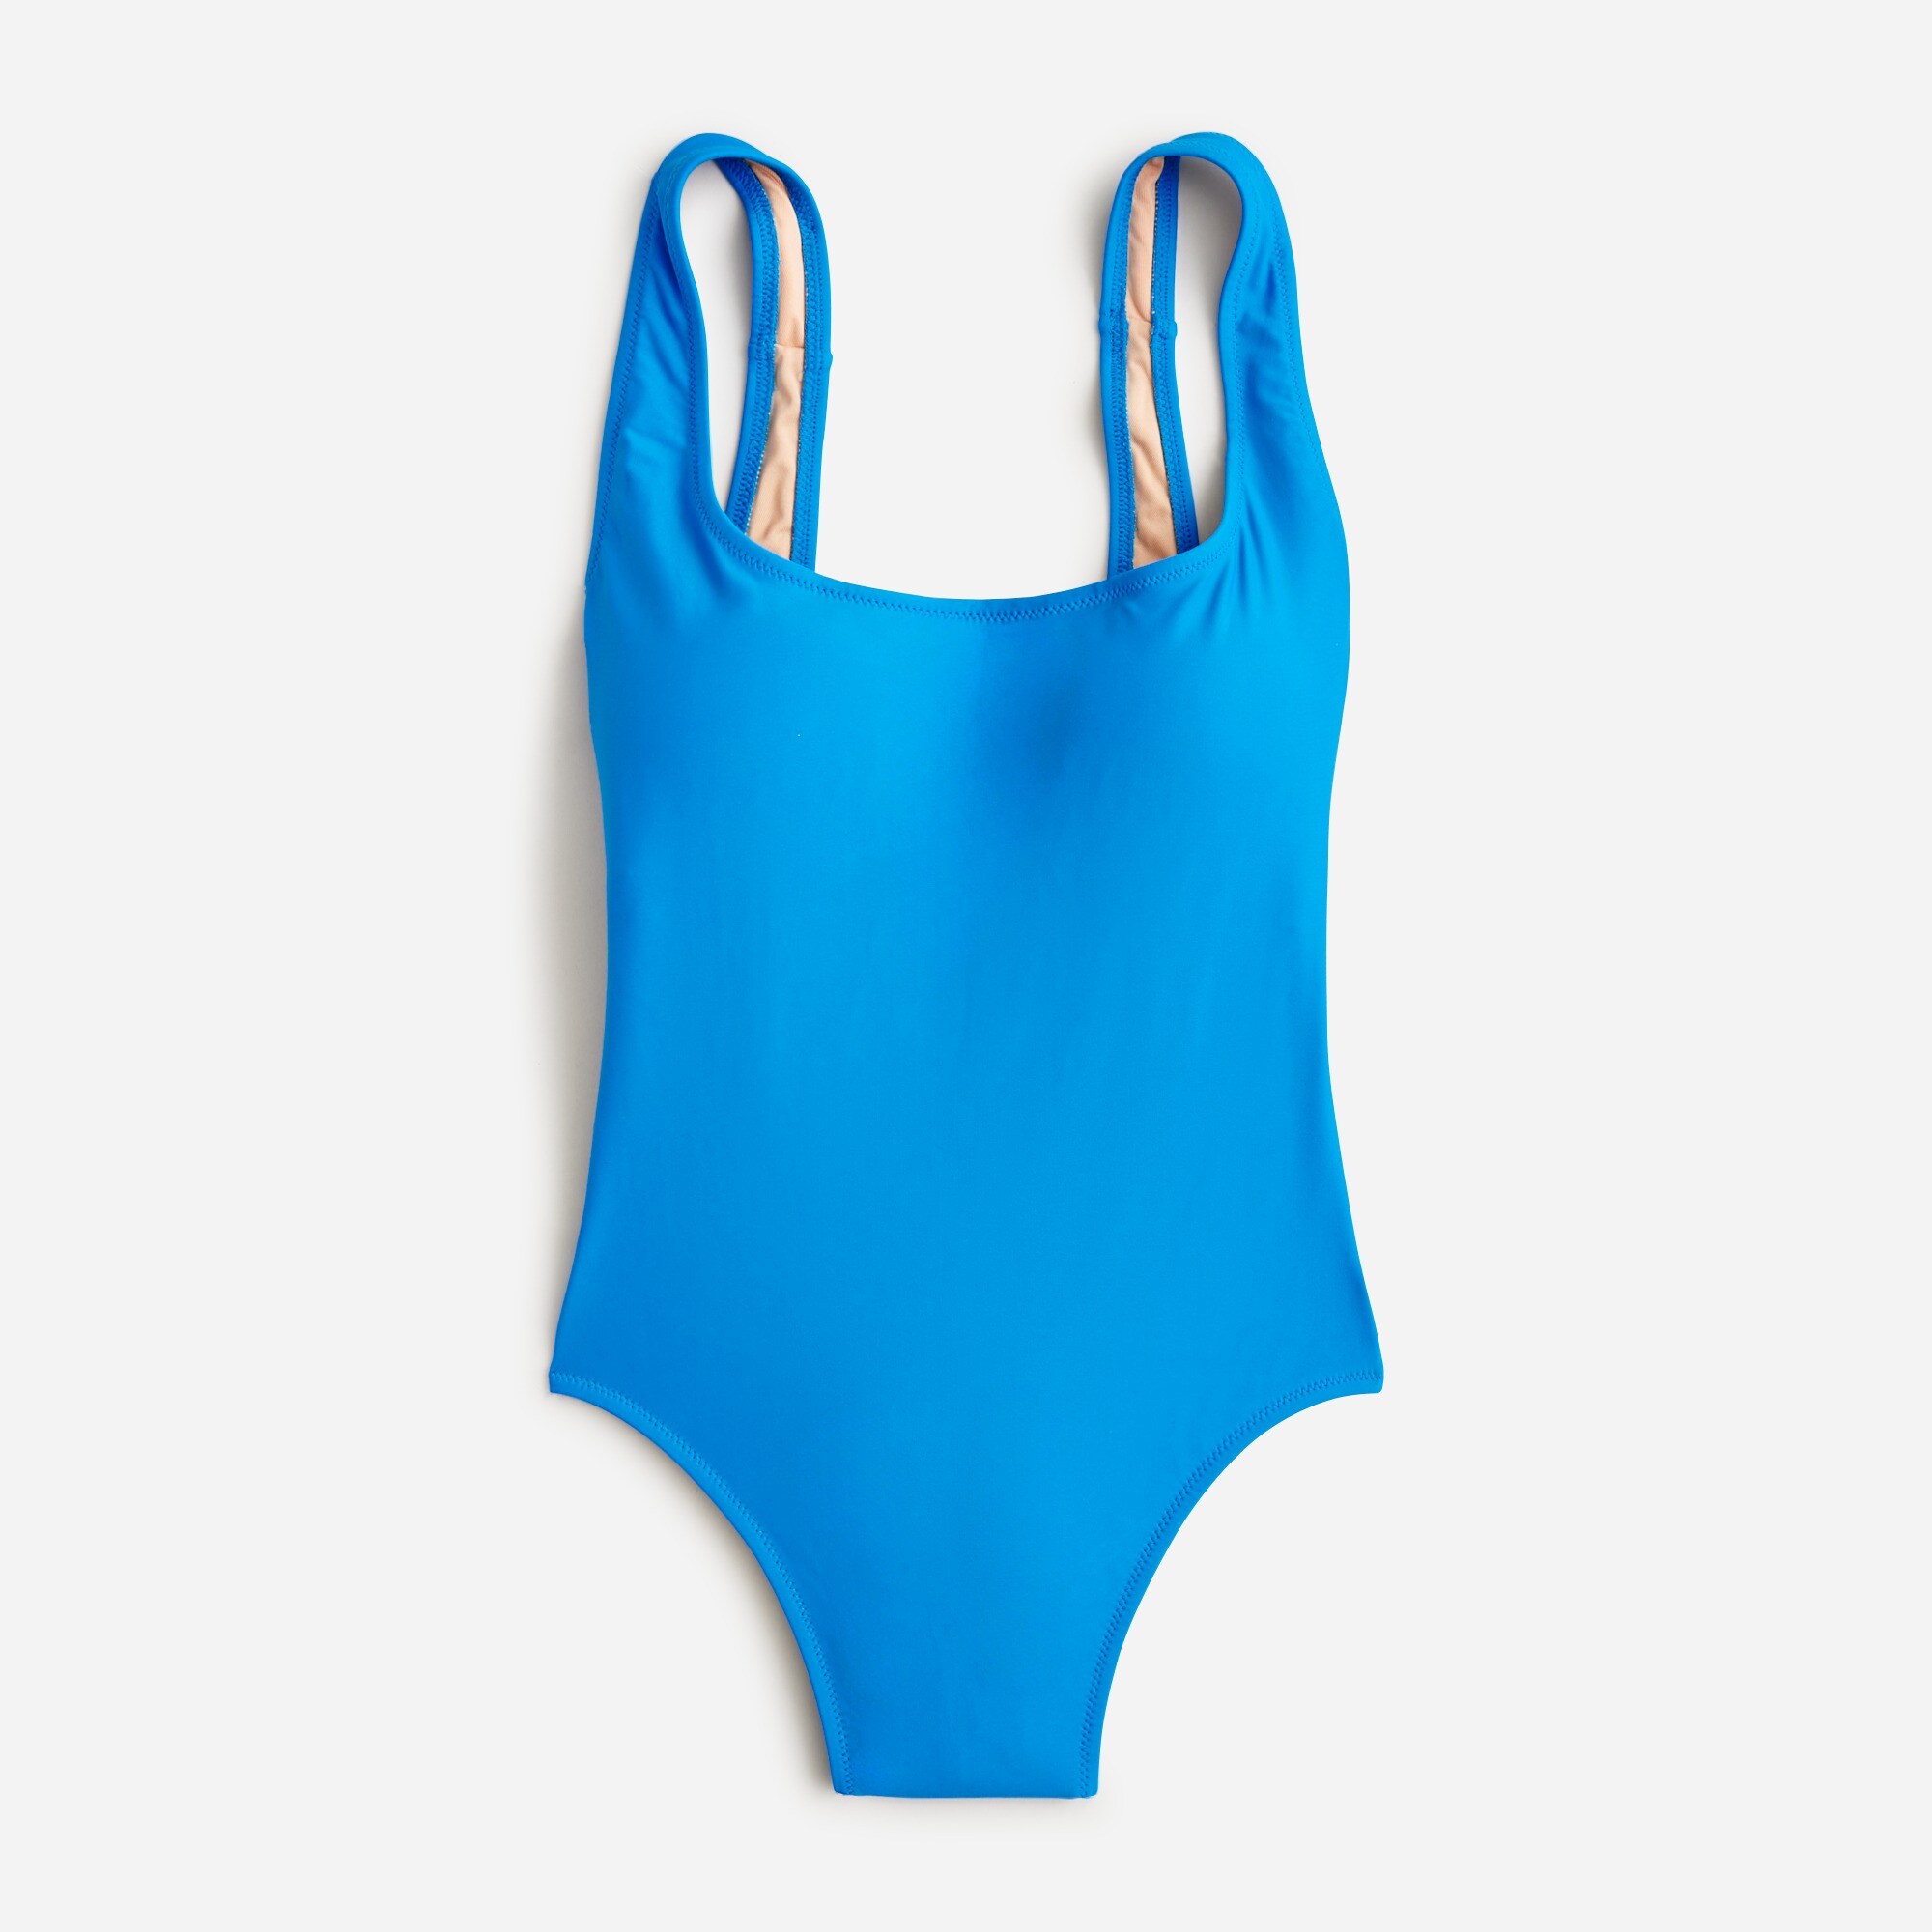  Scoopneck one-piece swimsuit